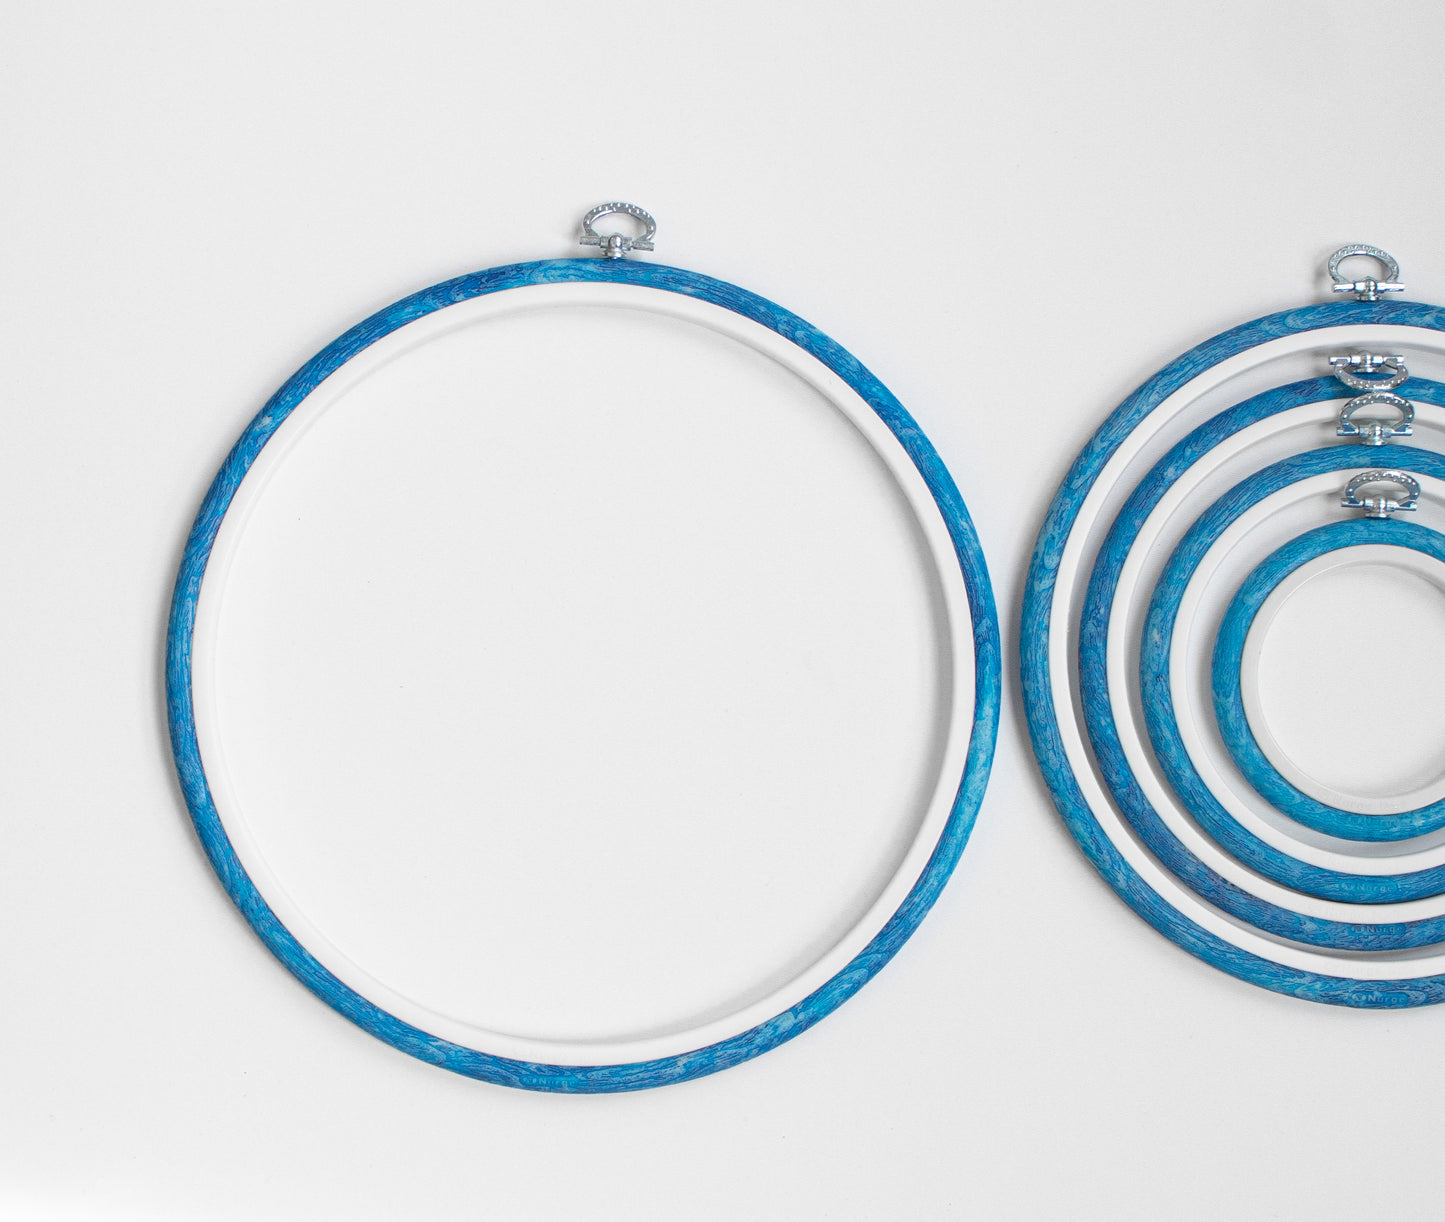 Embroidery Hoops - Nurge Flexible Hoops, Round